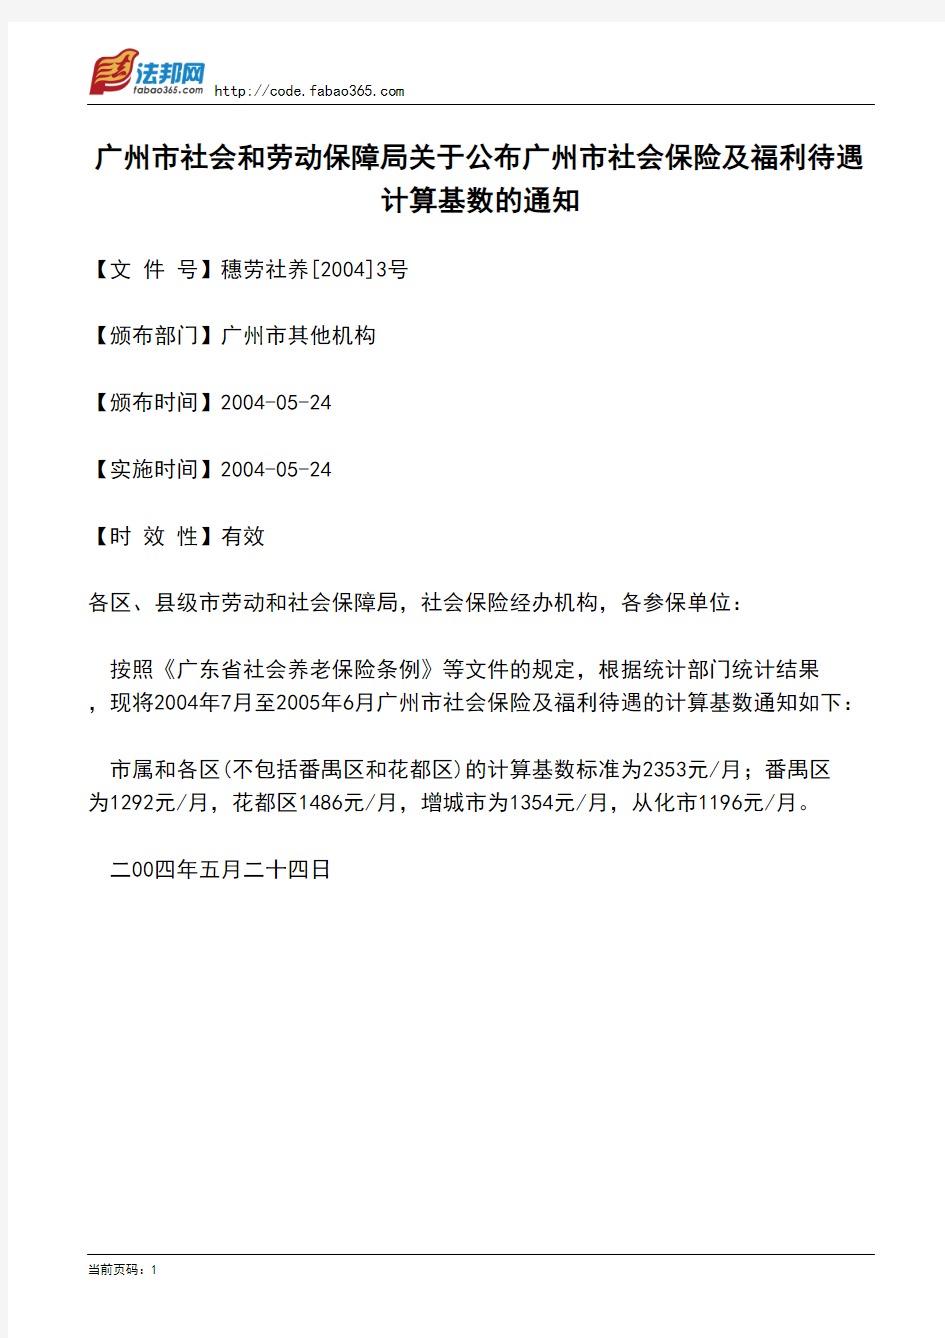 广州市社会和劳动保障局关于公布广州市社会保险及福利待遇计算基数的通知